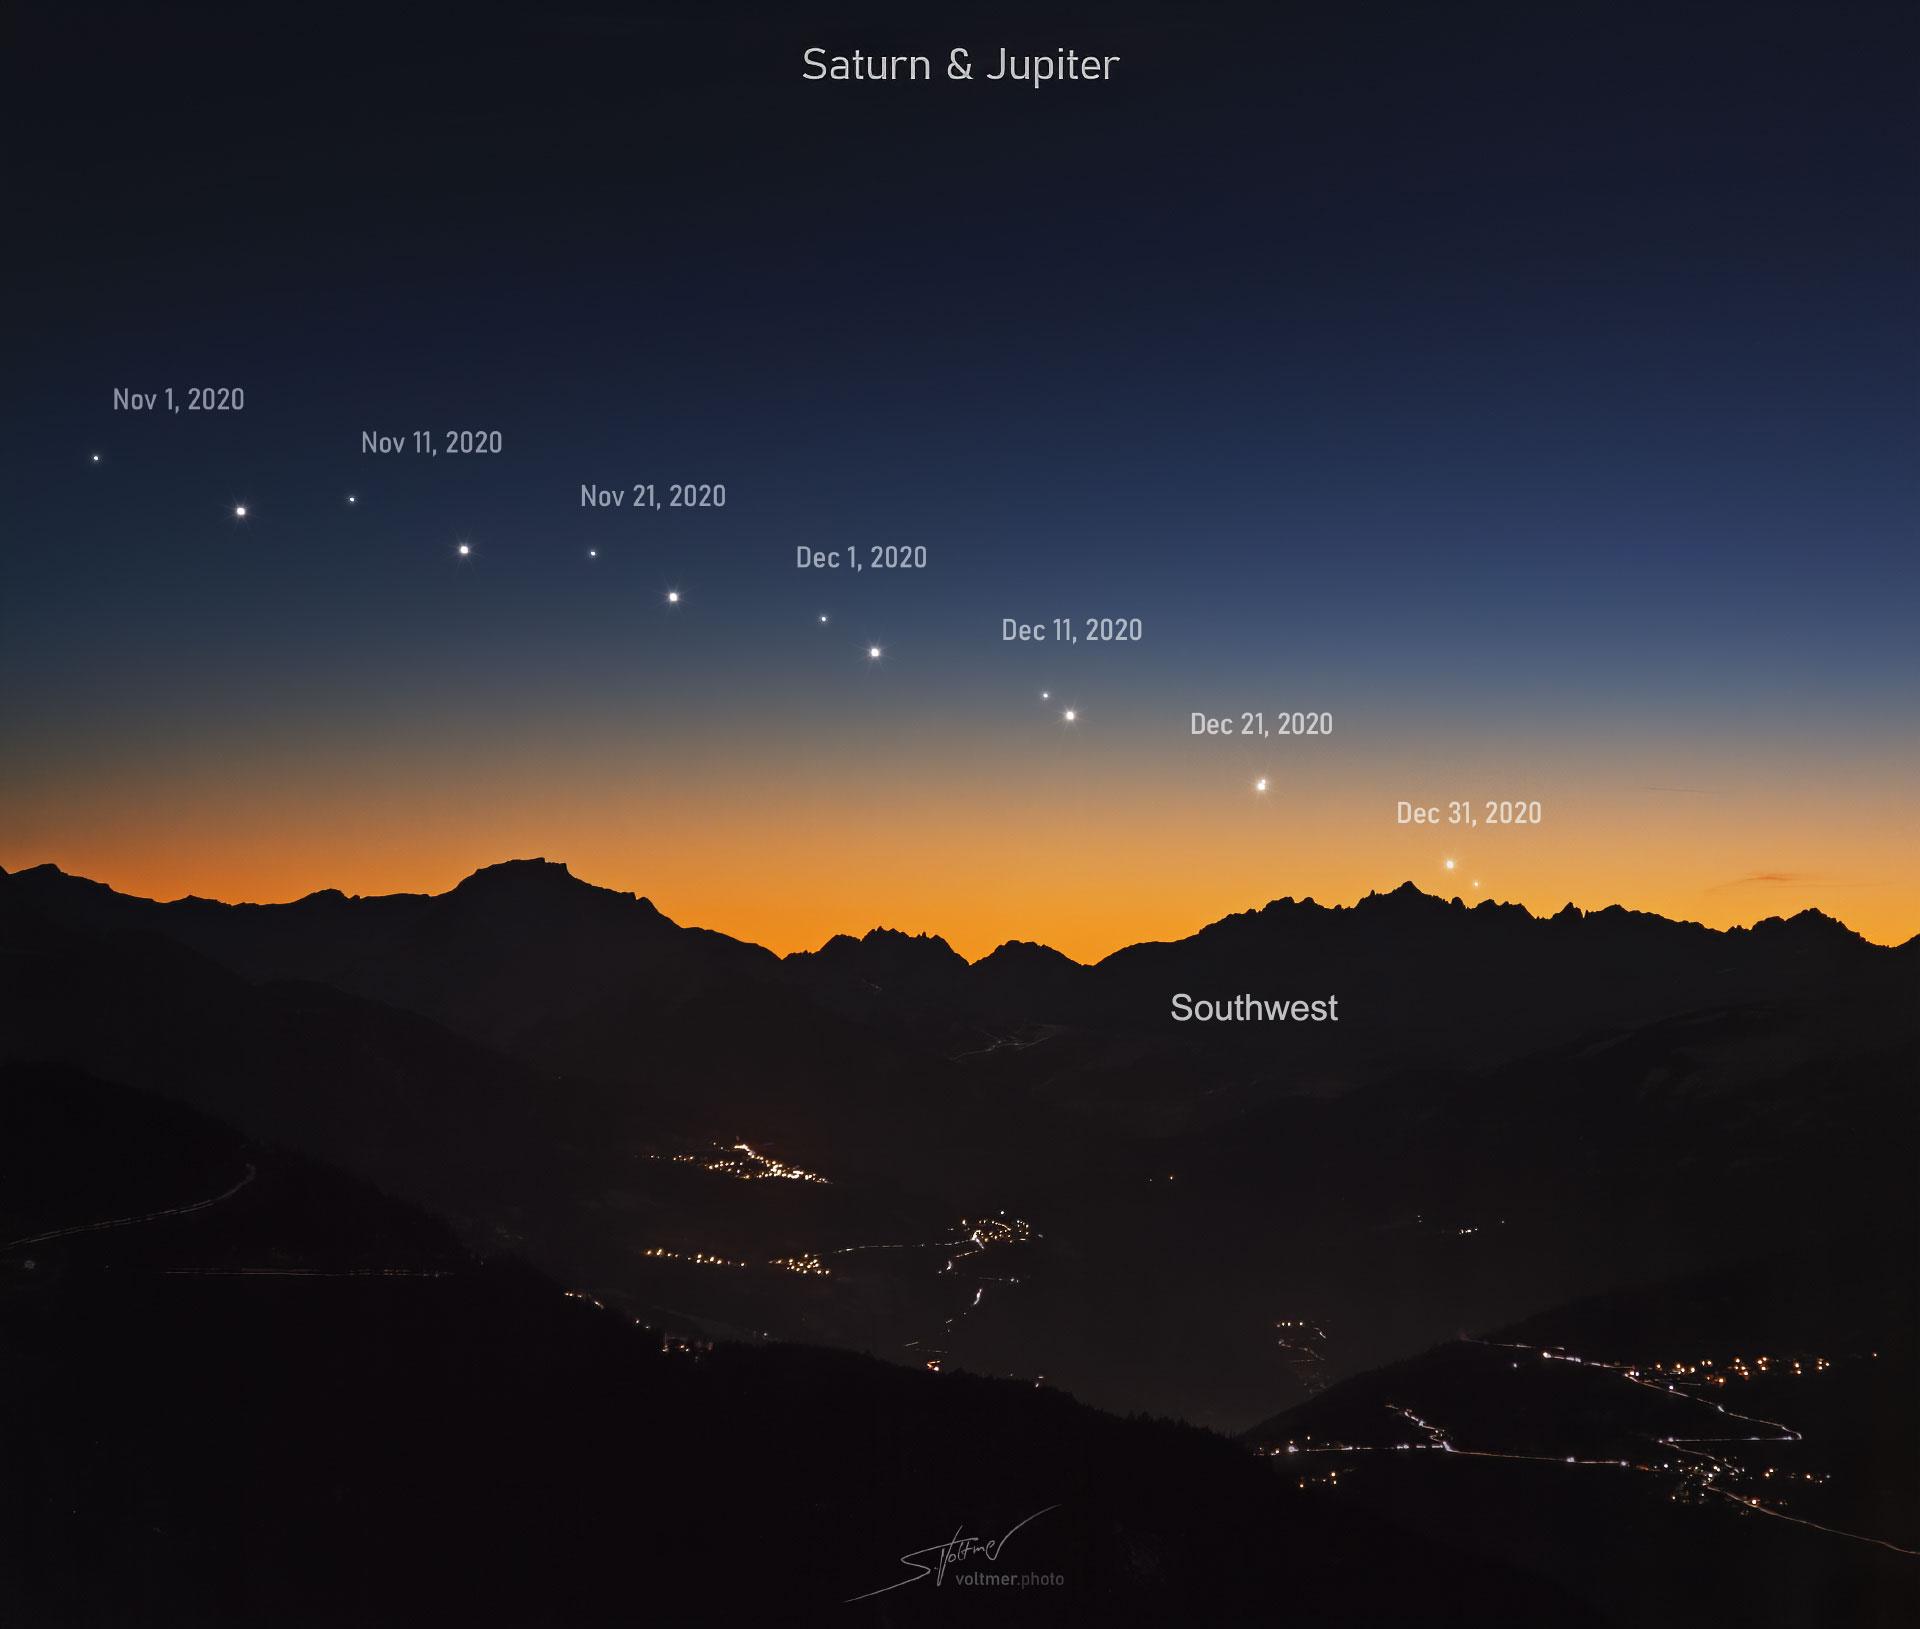 صورة توضيحية تظهر تقارب زحل والمشتري خلال شهري تشرين الثاني (نوفمبر) وكانون الأول (ديسمبر) فوق جبال الألب الفرنسية.